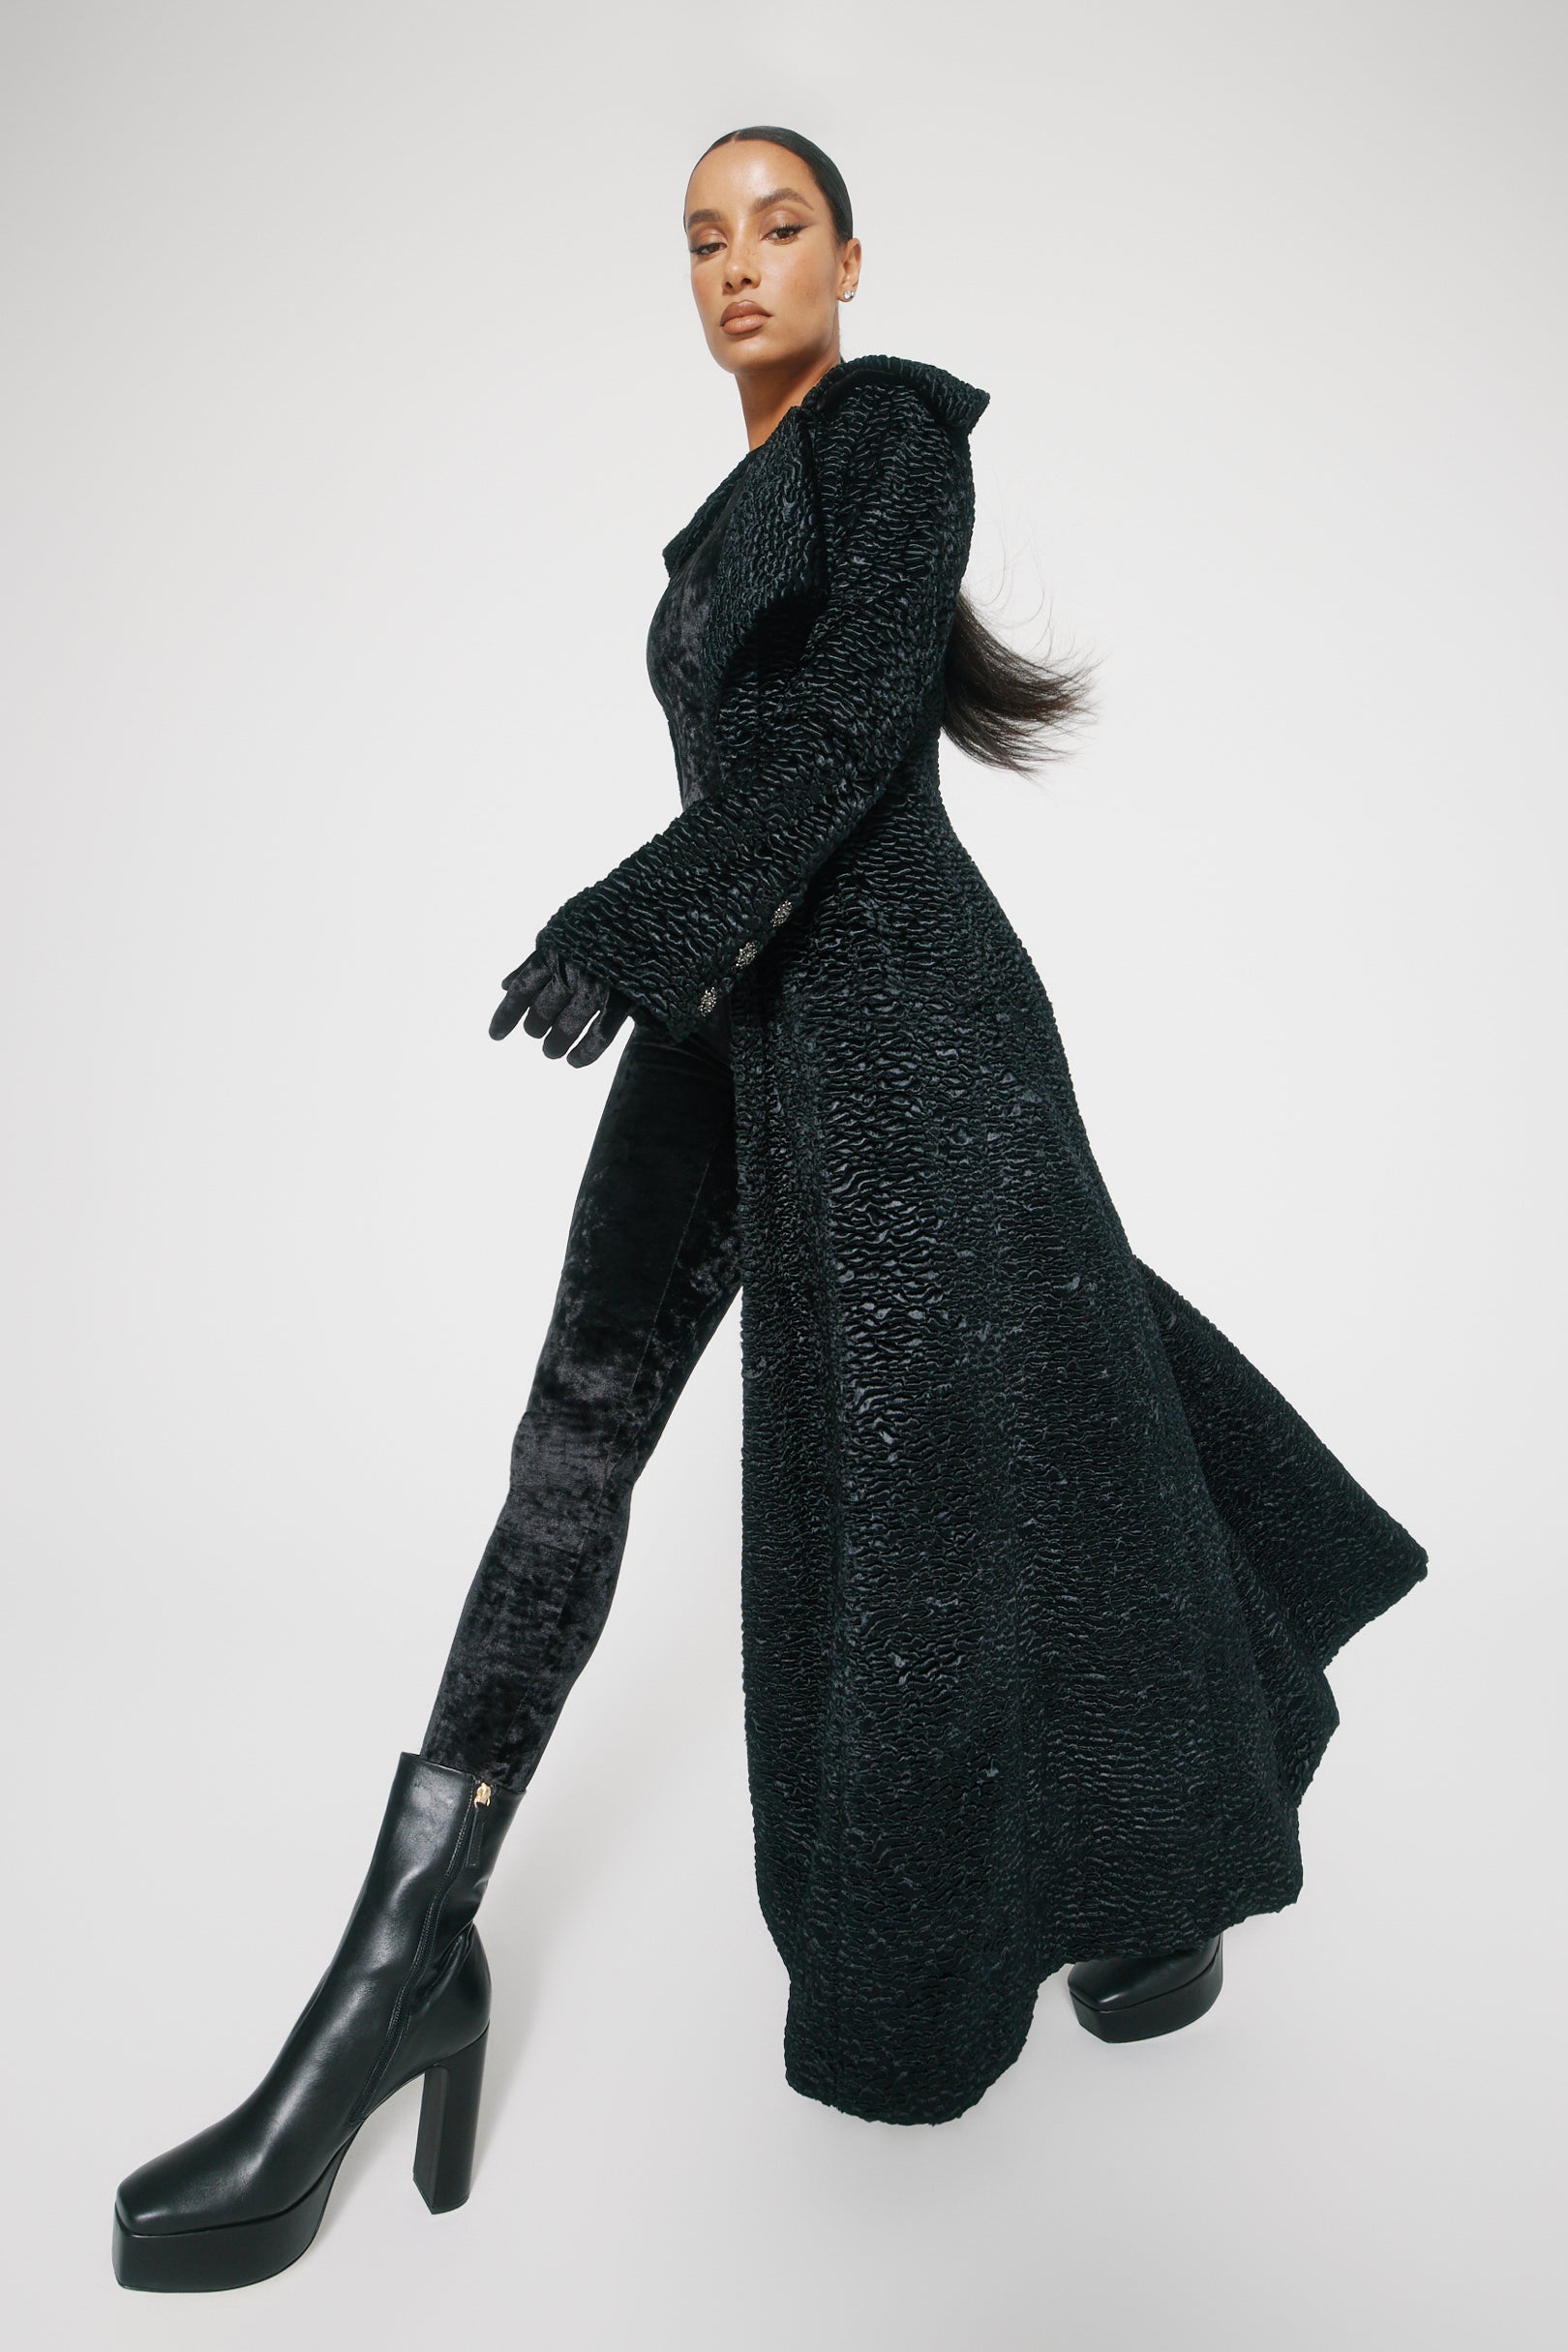 Femme Fatale Black Faux Fur Coat